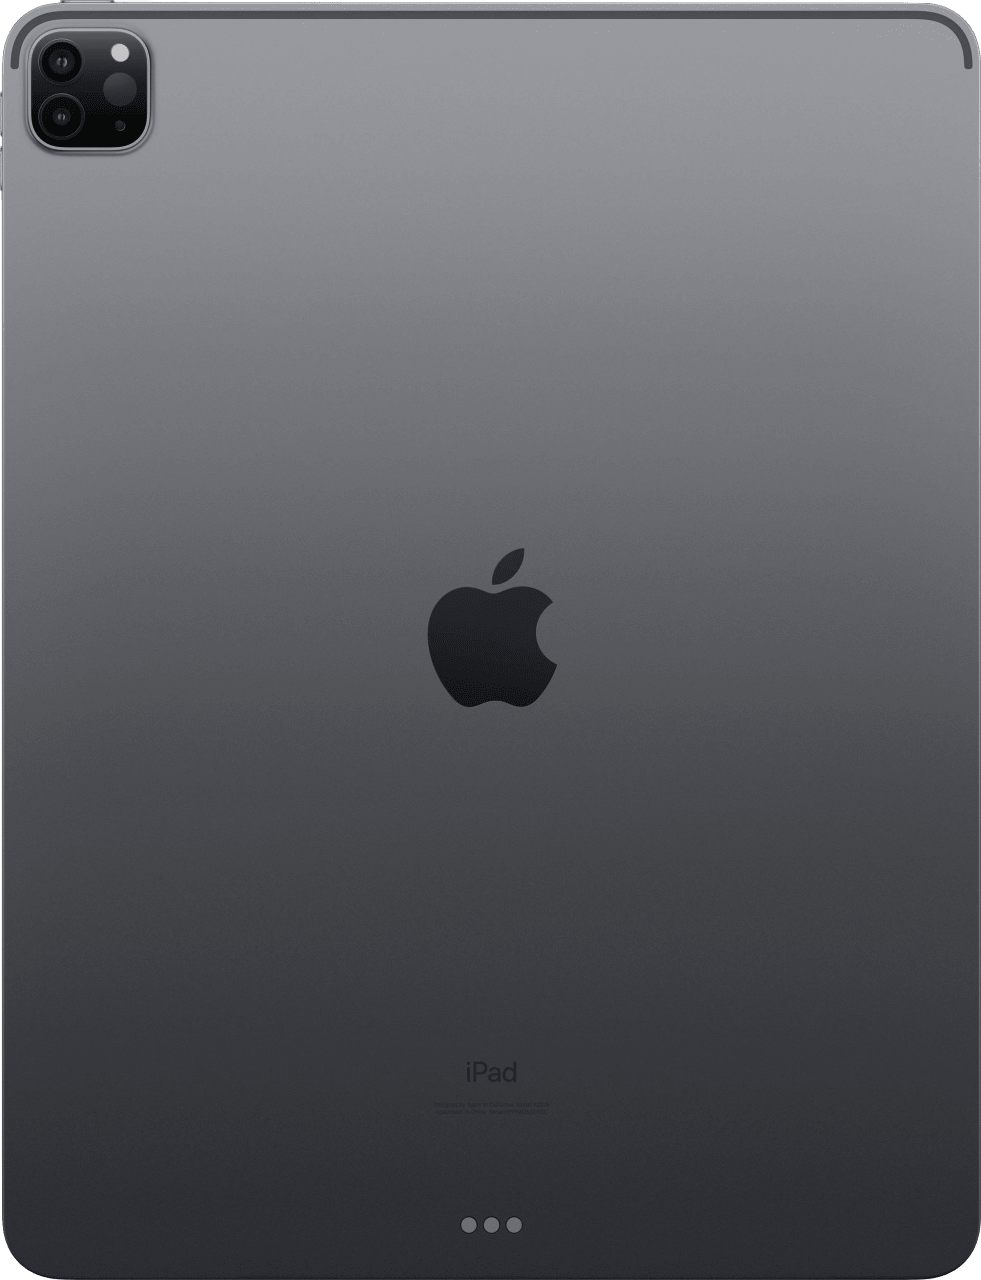 Gris Apple 12.9" iPad Pro (2020) - WiFi - iOS14 - 128GB.4